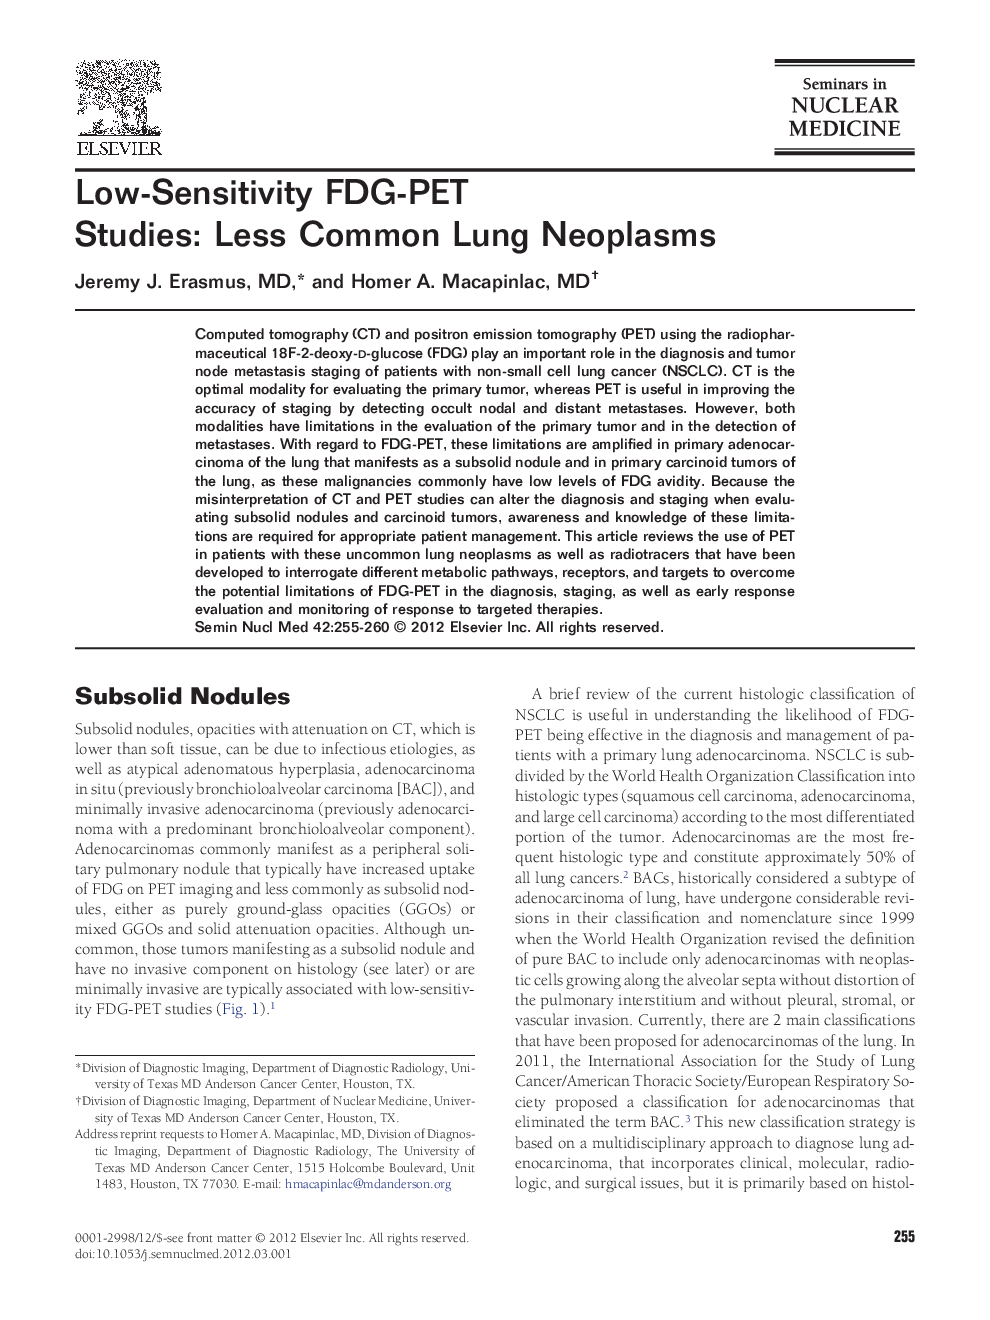 Low-Sensitivity FDG-PET Studies: Less Common Lung Neoplasms